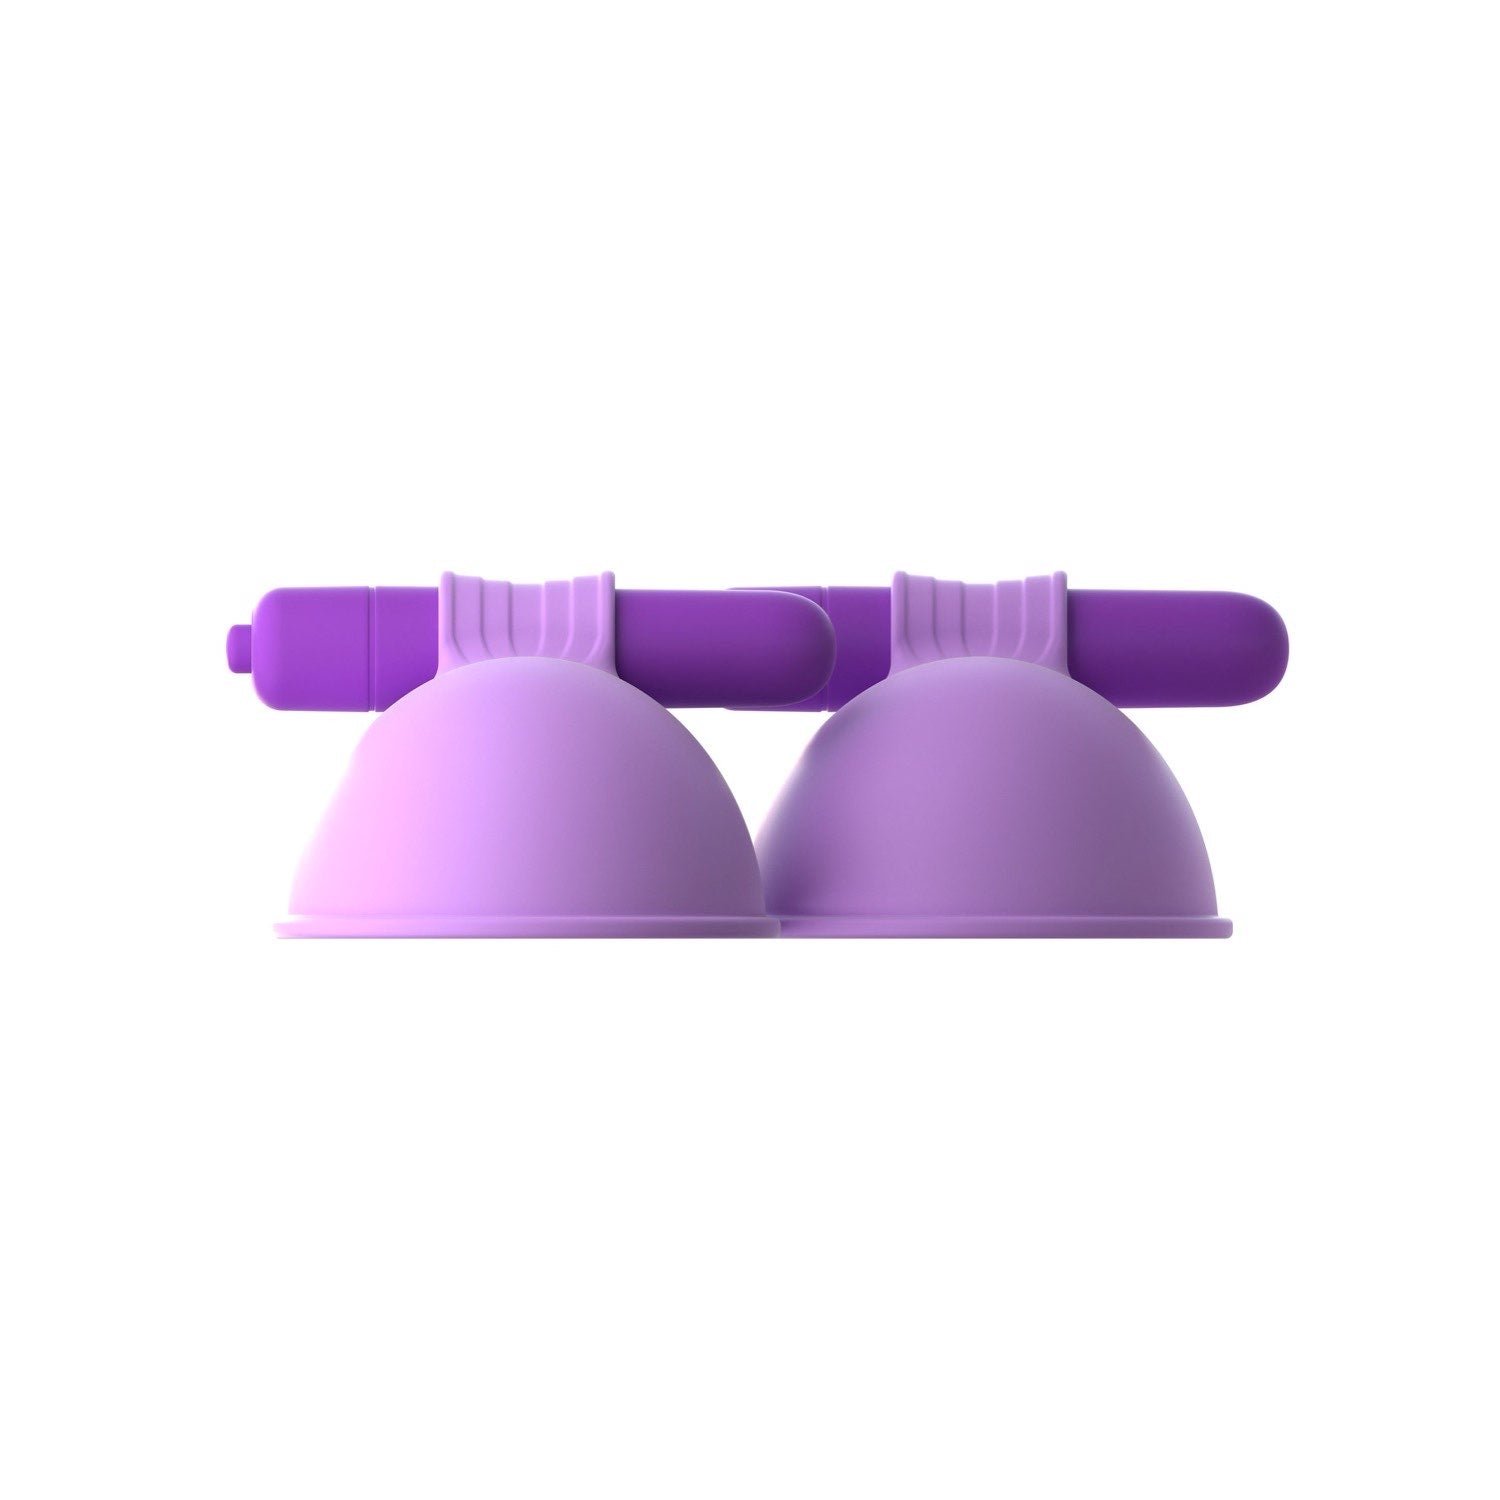 为她幻想 振动吸乳器-她 - 紫色 7 厘米振动吸乳器 - 2 件套 by Pipedream